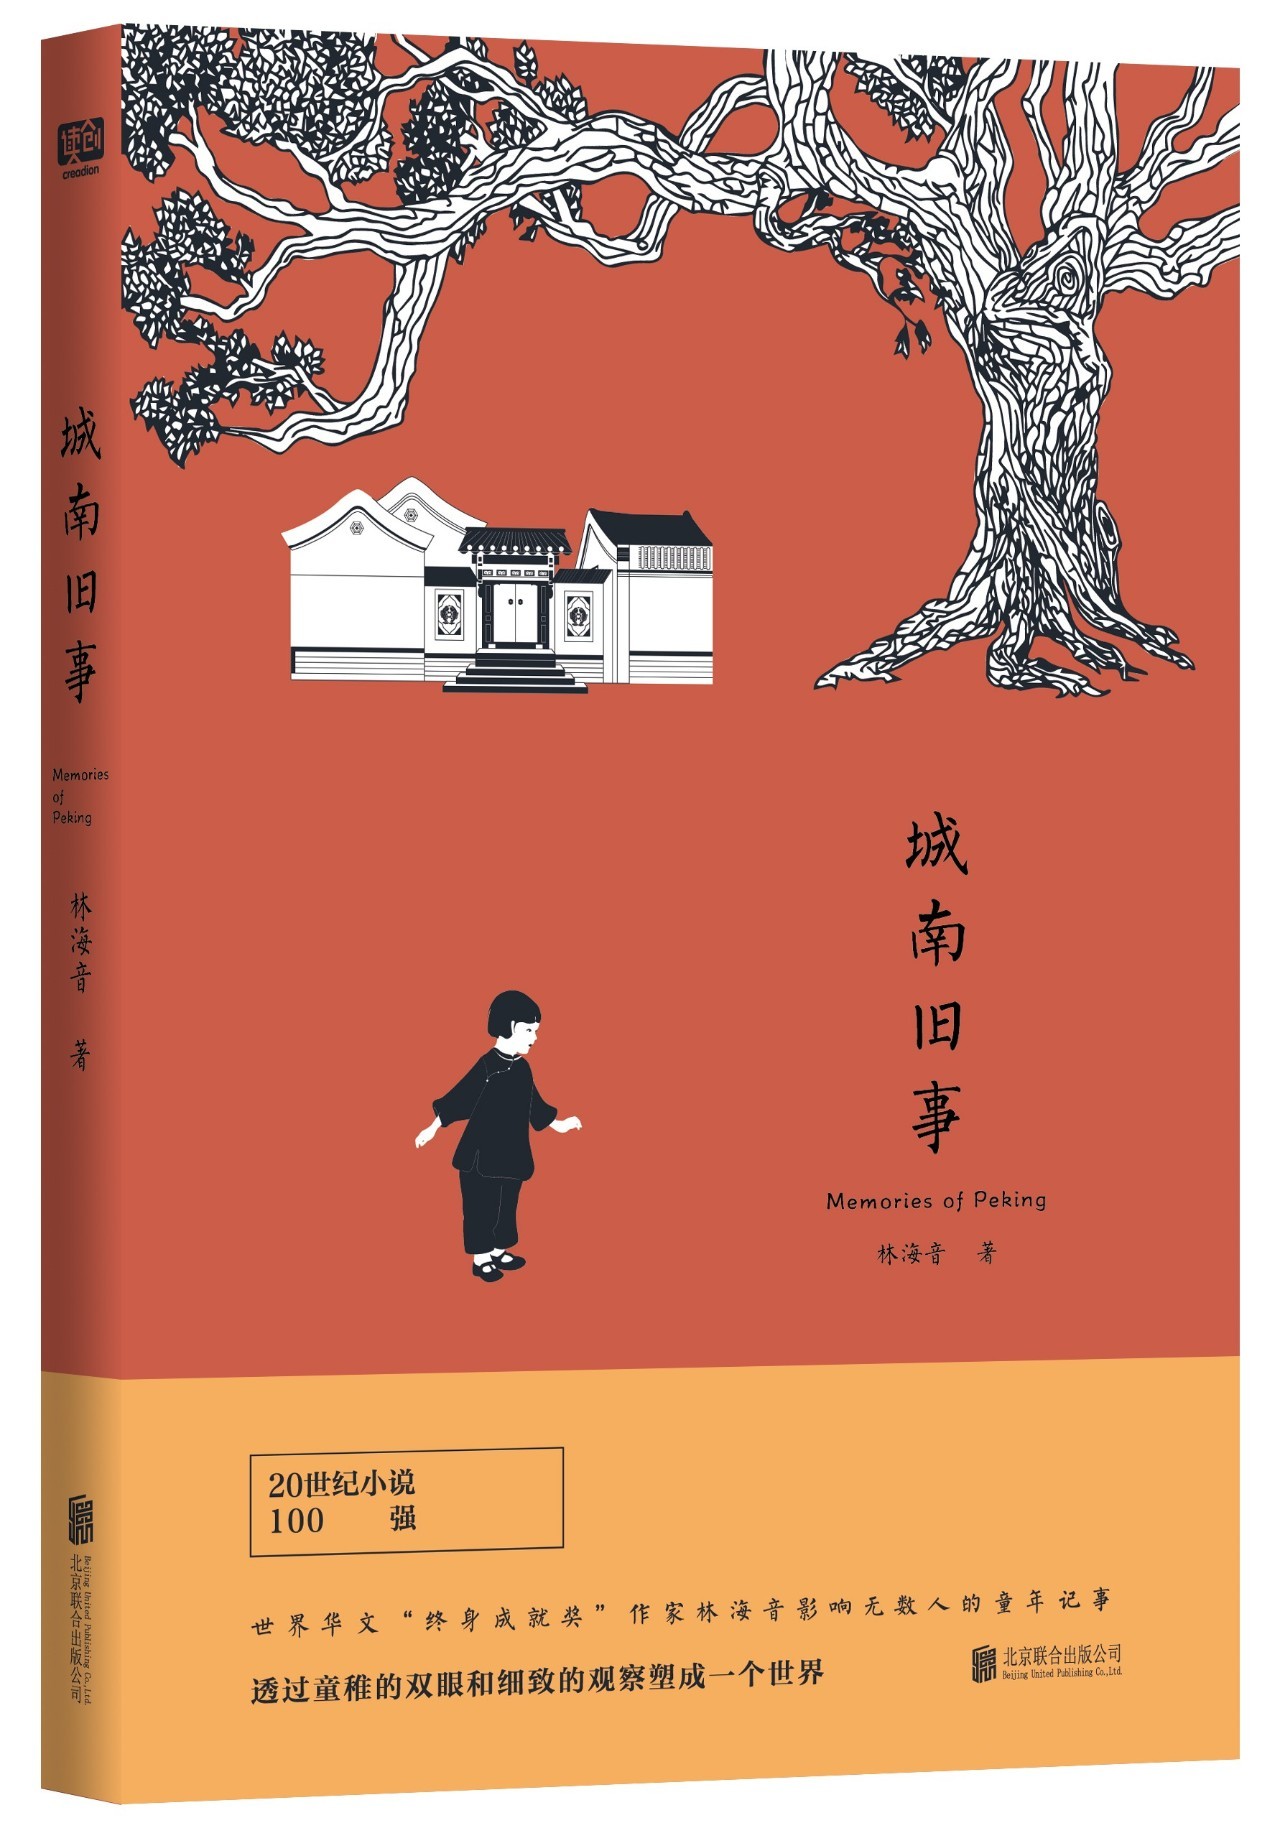 城南旧事林海音丨著北京联合出版公司内容简介:《城南旧事》是著名女